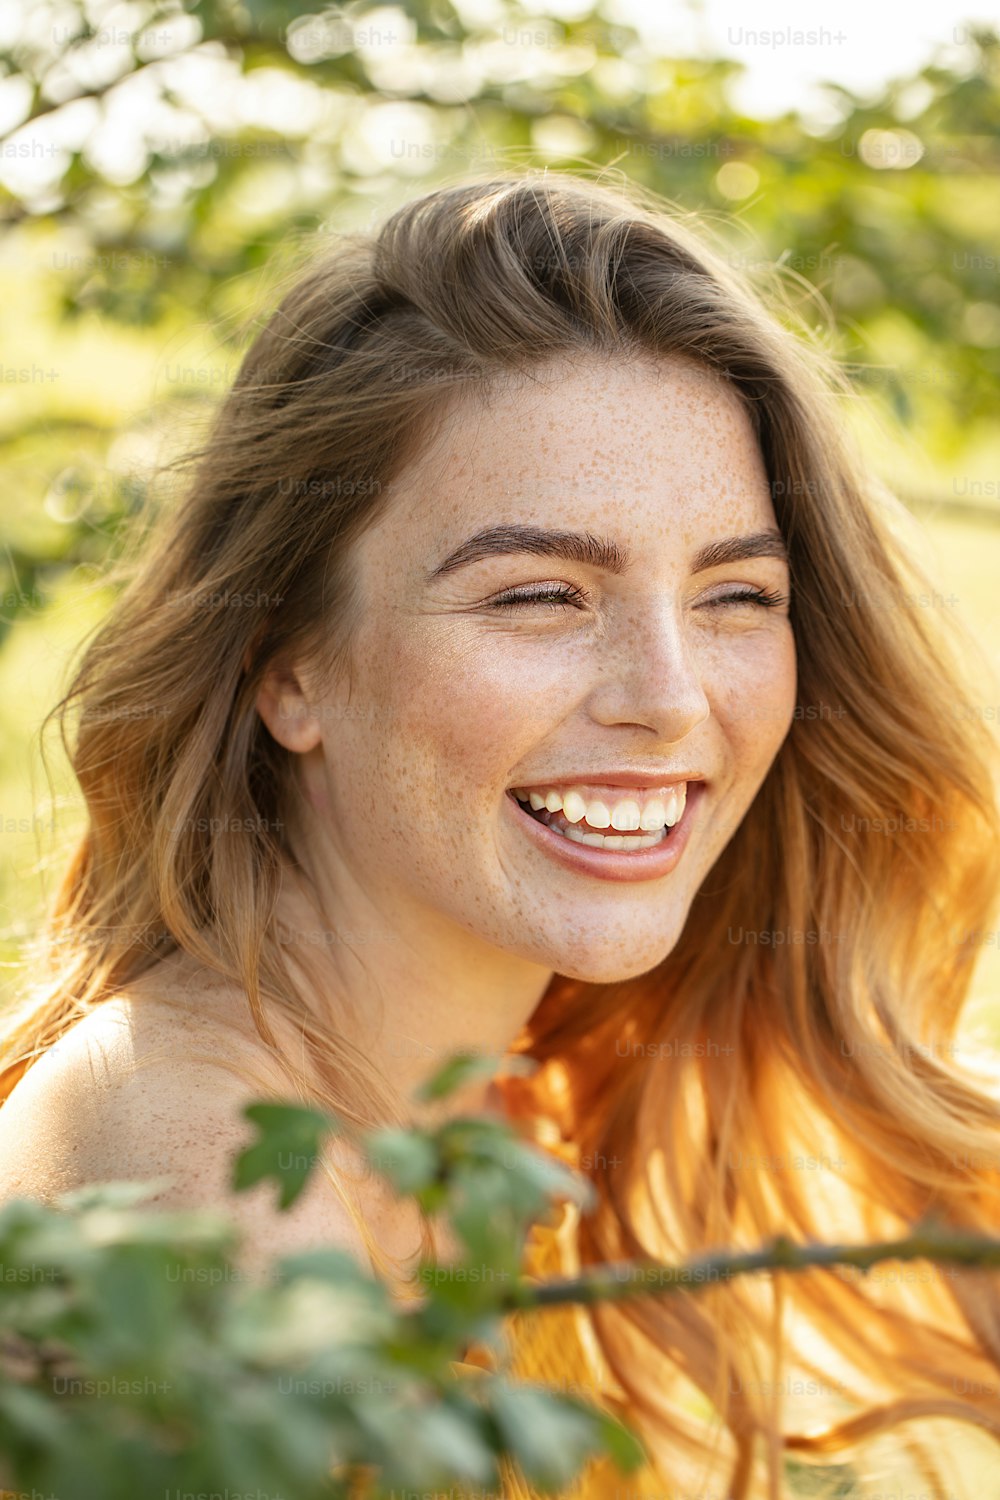 주근깨가 있는 행복한 아름다운 여자가 웃고 있고, 화창한 날에 피는 정원에서 포즈를 취하고 있다.